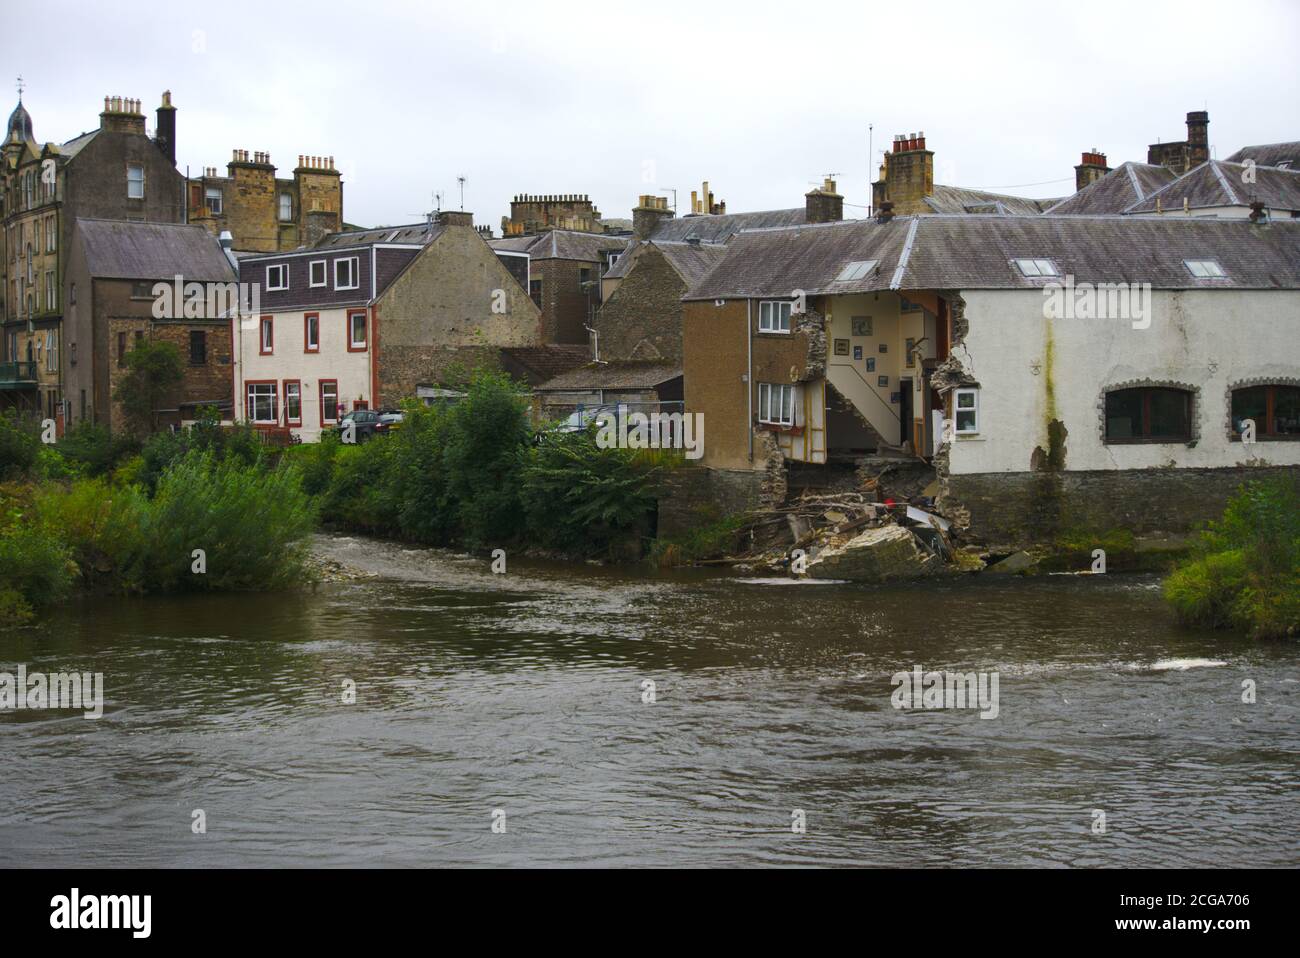 Bridge House in Hawick stürzte nach der Überschwemmung des Flusses Teviot während des Sturms Ciara, Februar 2020, teilweise ein. Stockfoto